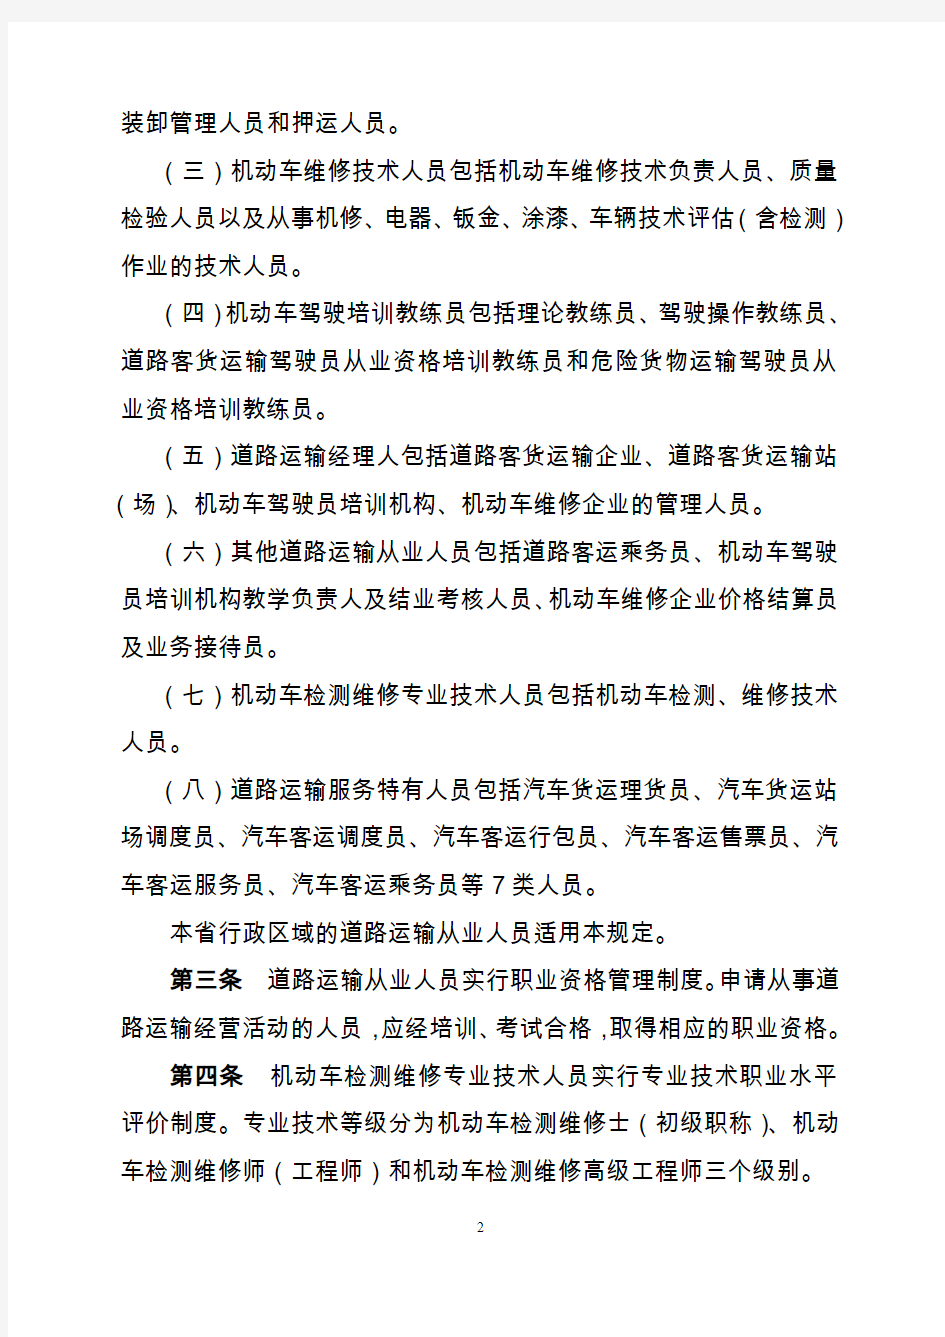 河南省道路运输从业人员职业资格管理规定